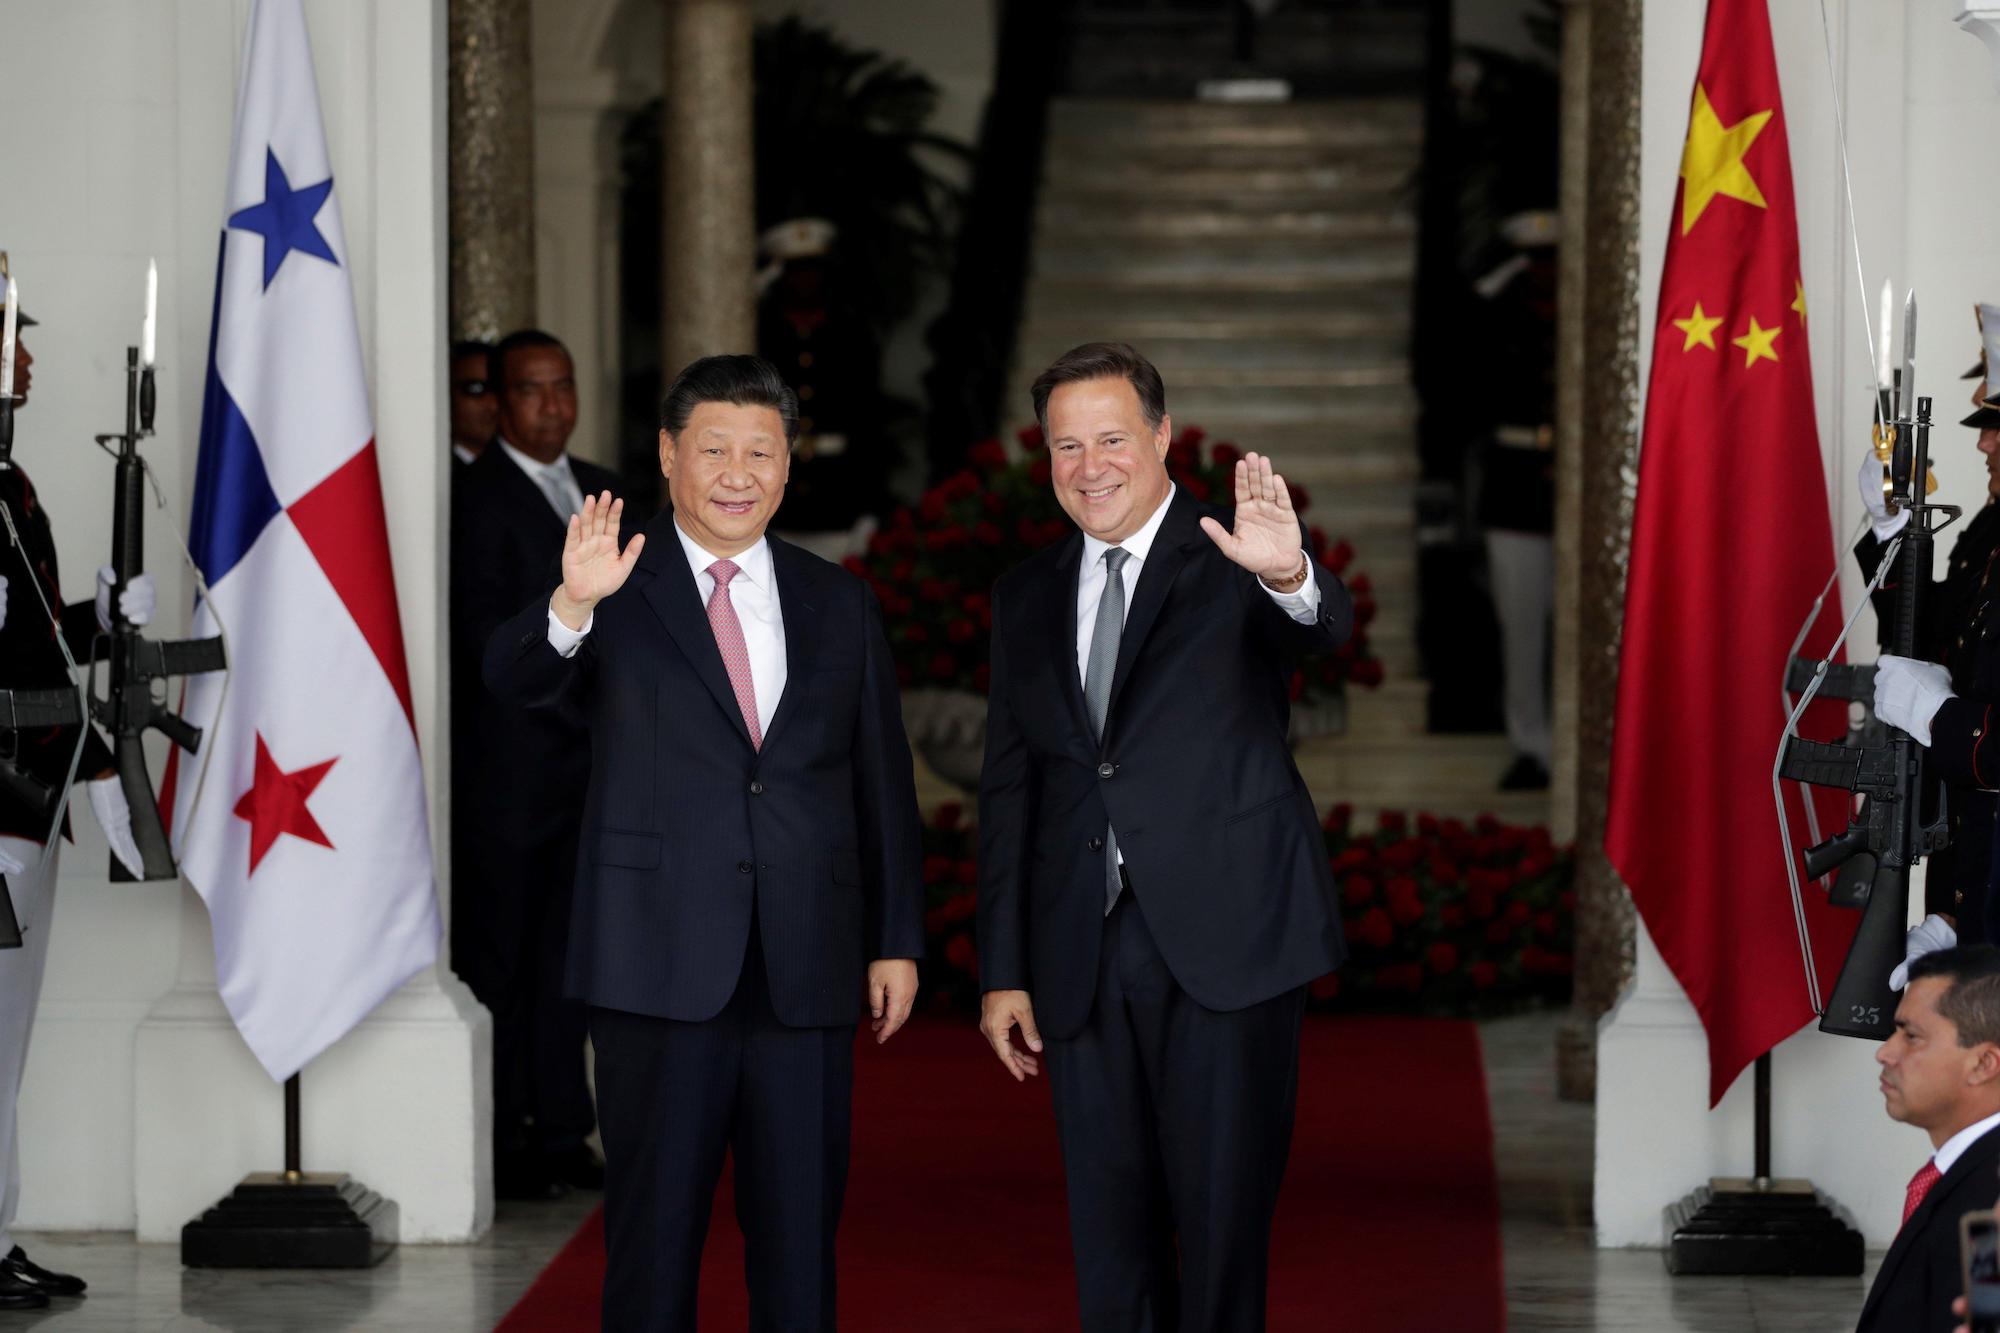 Juan Carlos Varela y Xi Jinping saludando, con banderas de Panamá y China a los costados